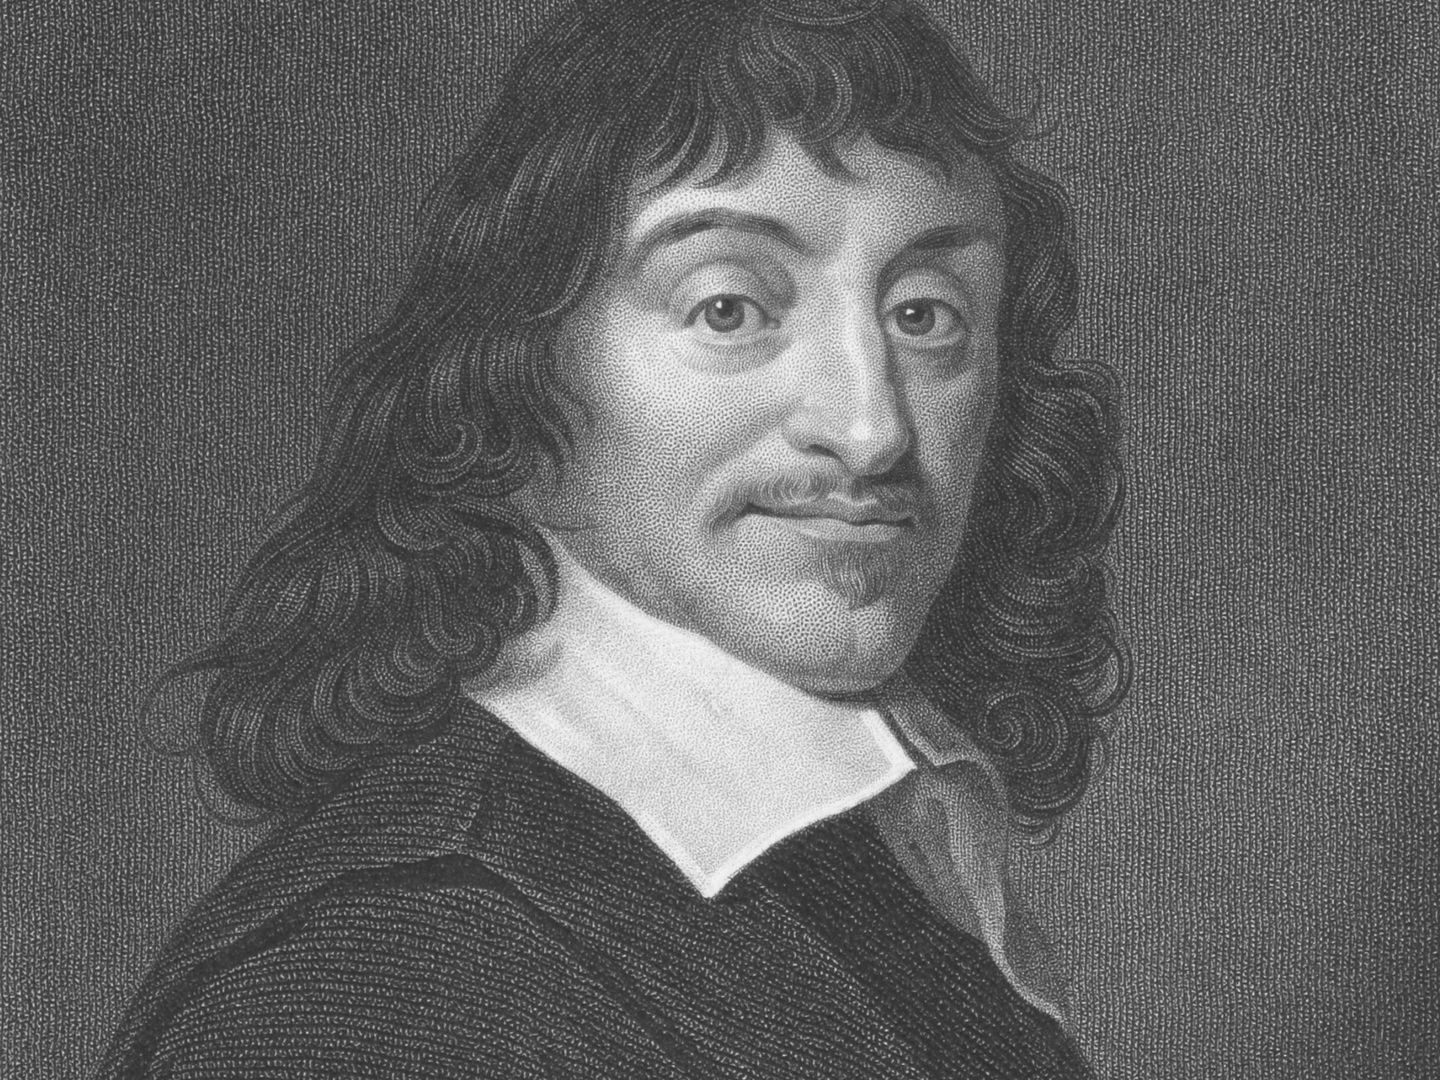 Grabado de René Descartes en 1850. (iStock)